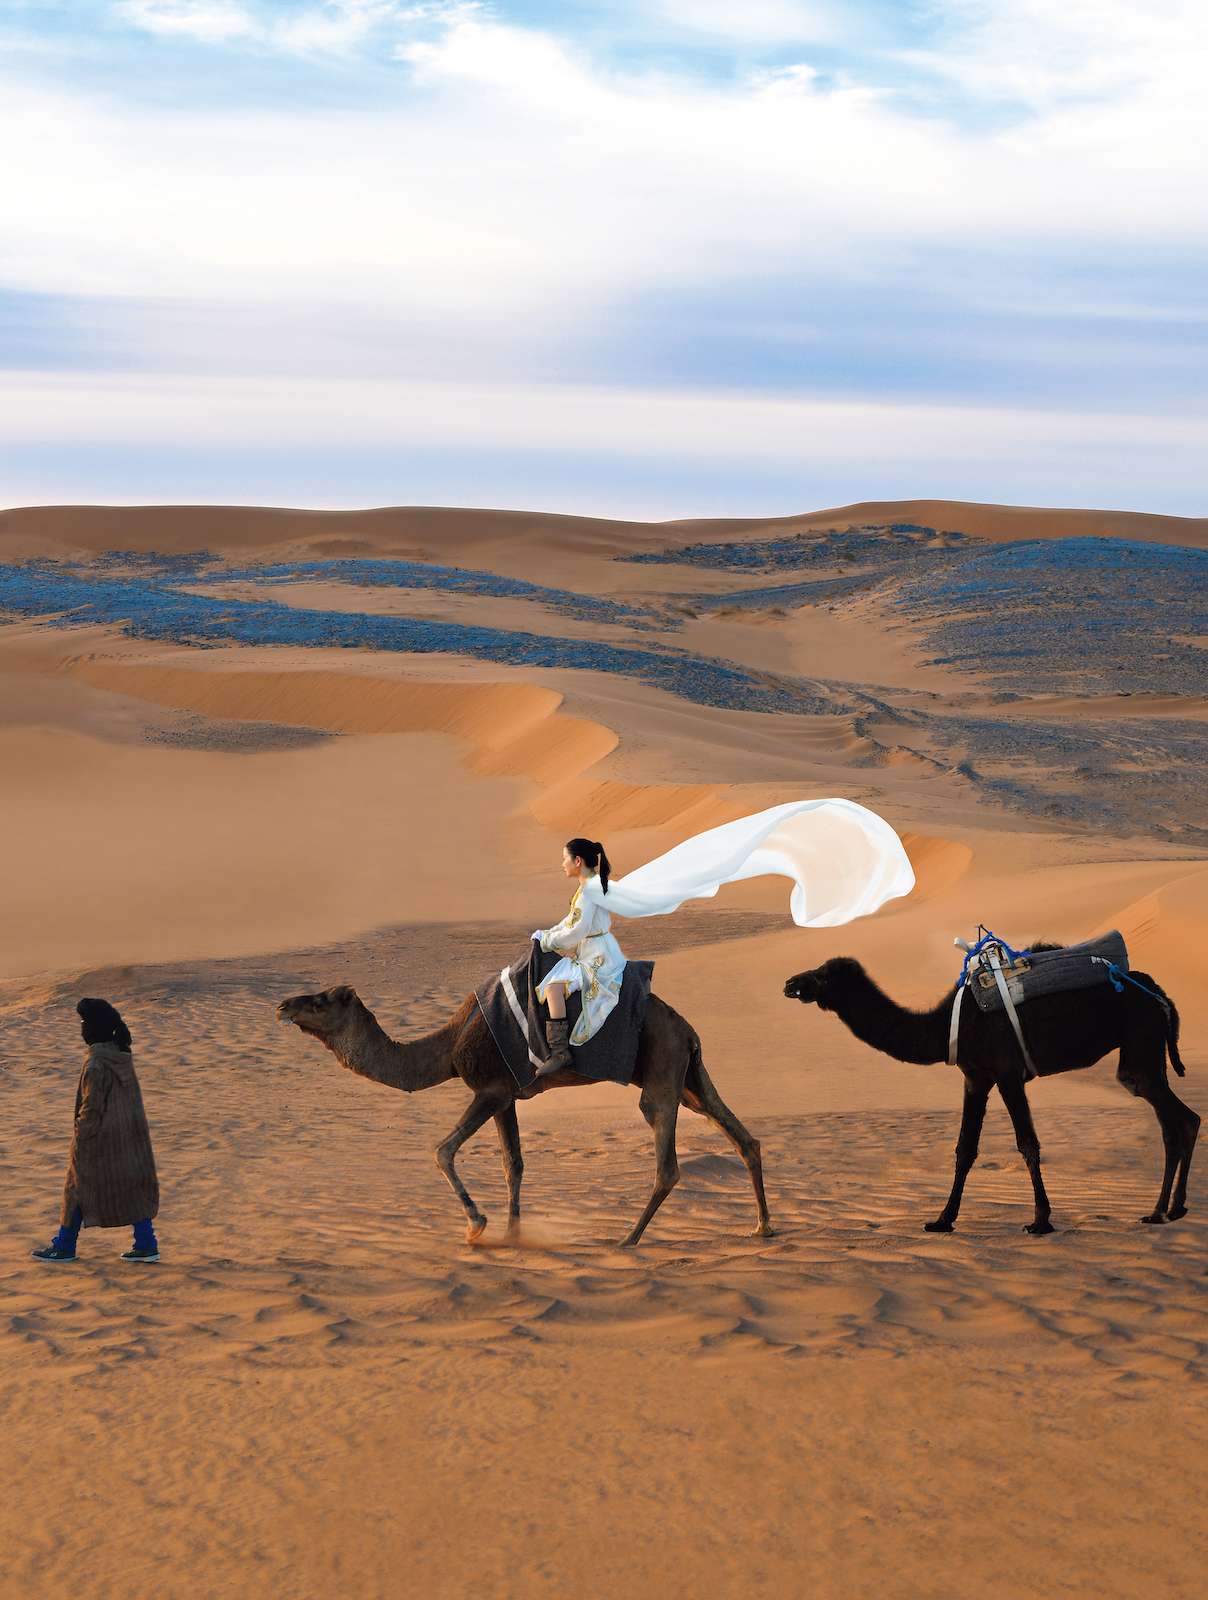 ラクダに乗って砂漠を歩く